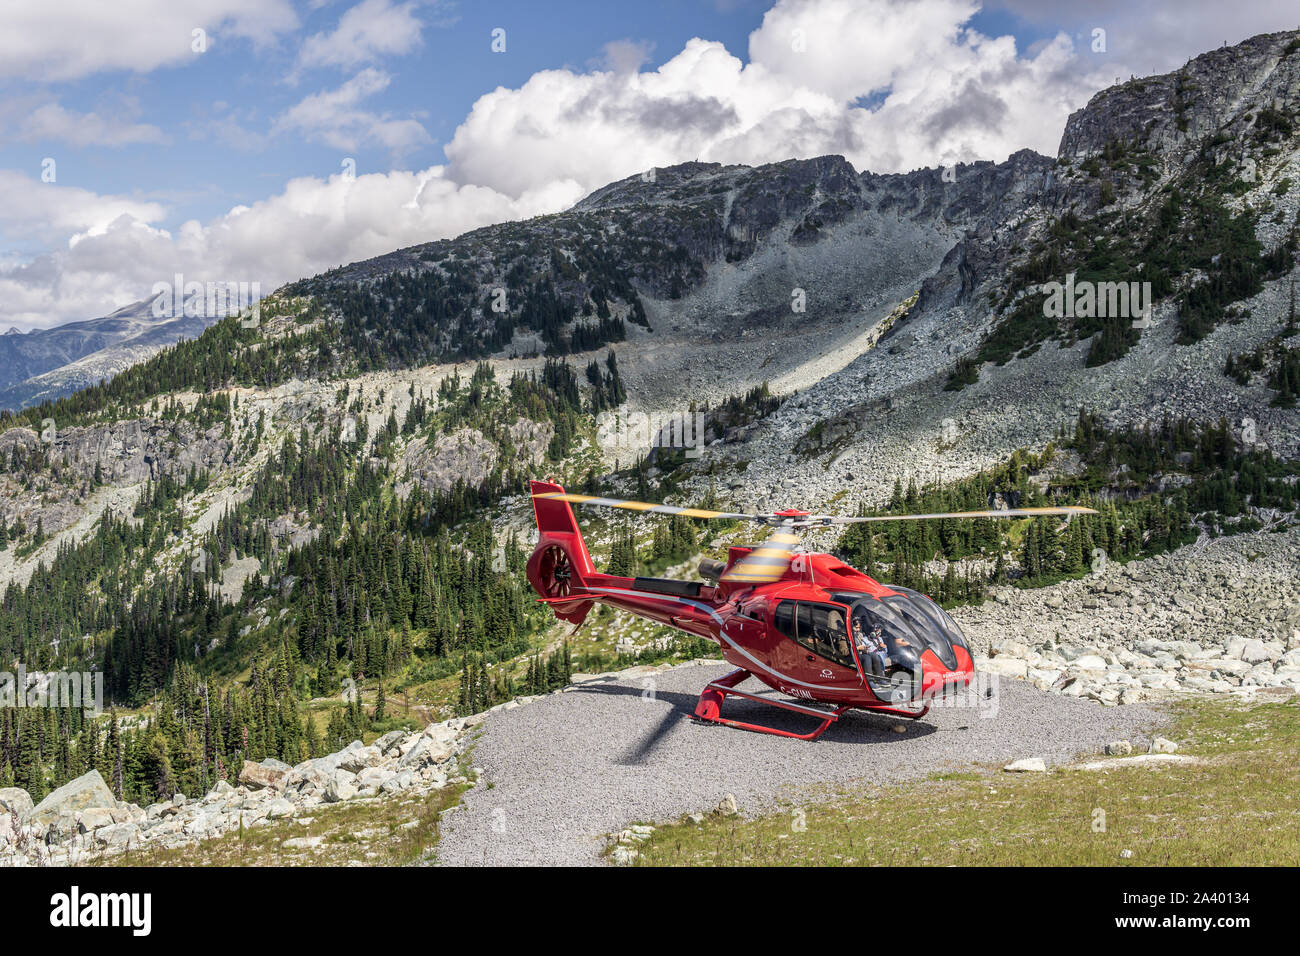 WHISTLER, Canada - 25 agosto 2019: rosso elicottero sul Monte Blackcomb aria per tour di ricerca. Foto Stock